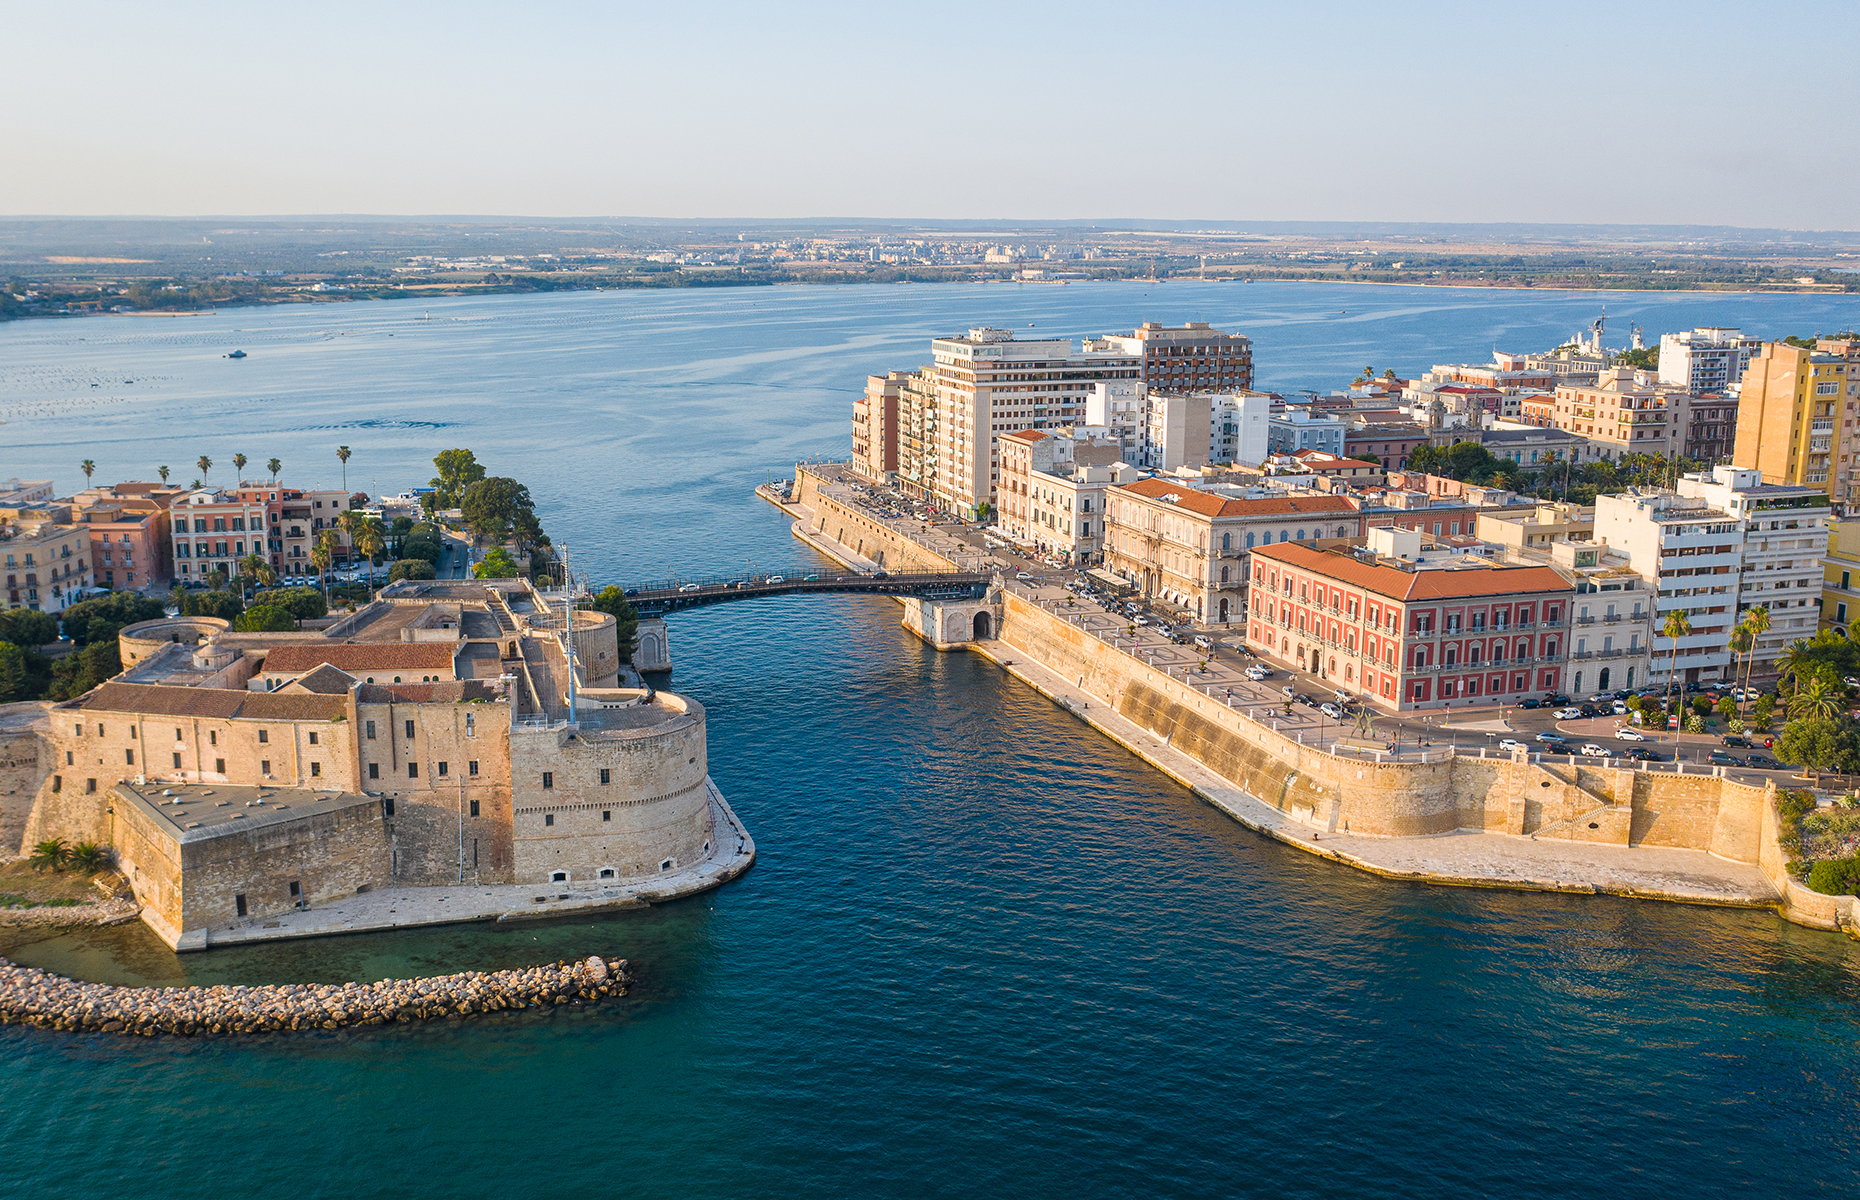 Taranto in Puglia, Italy (Image: photovideoworld/Shutterstock)